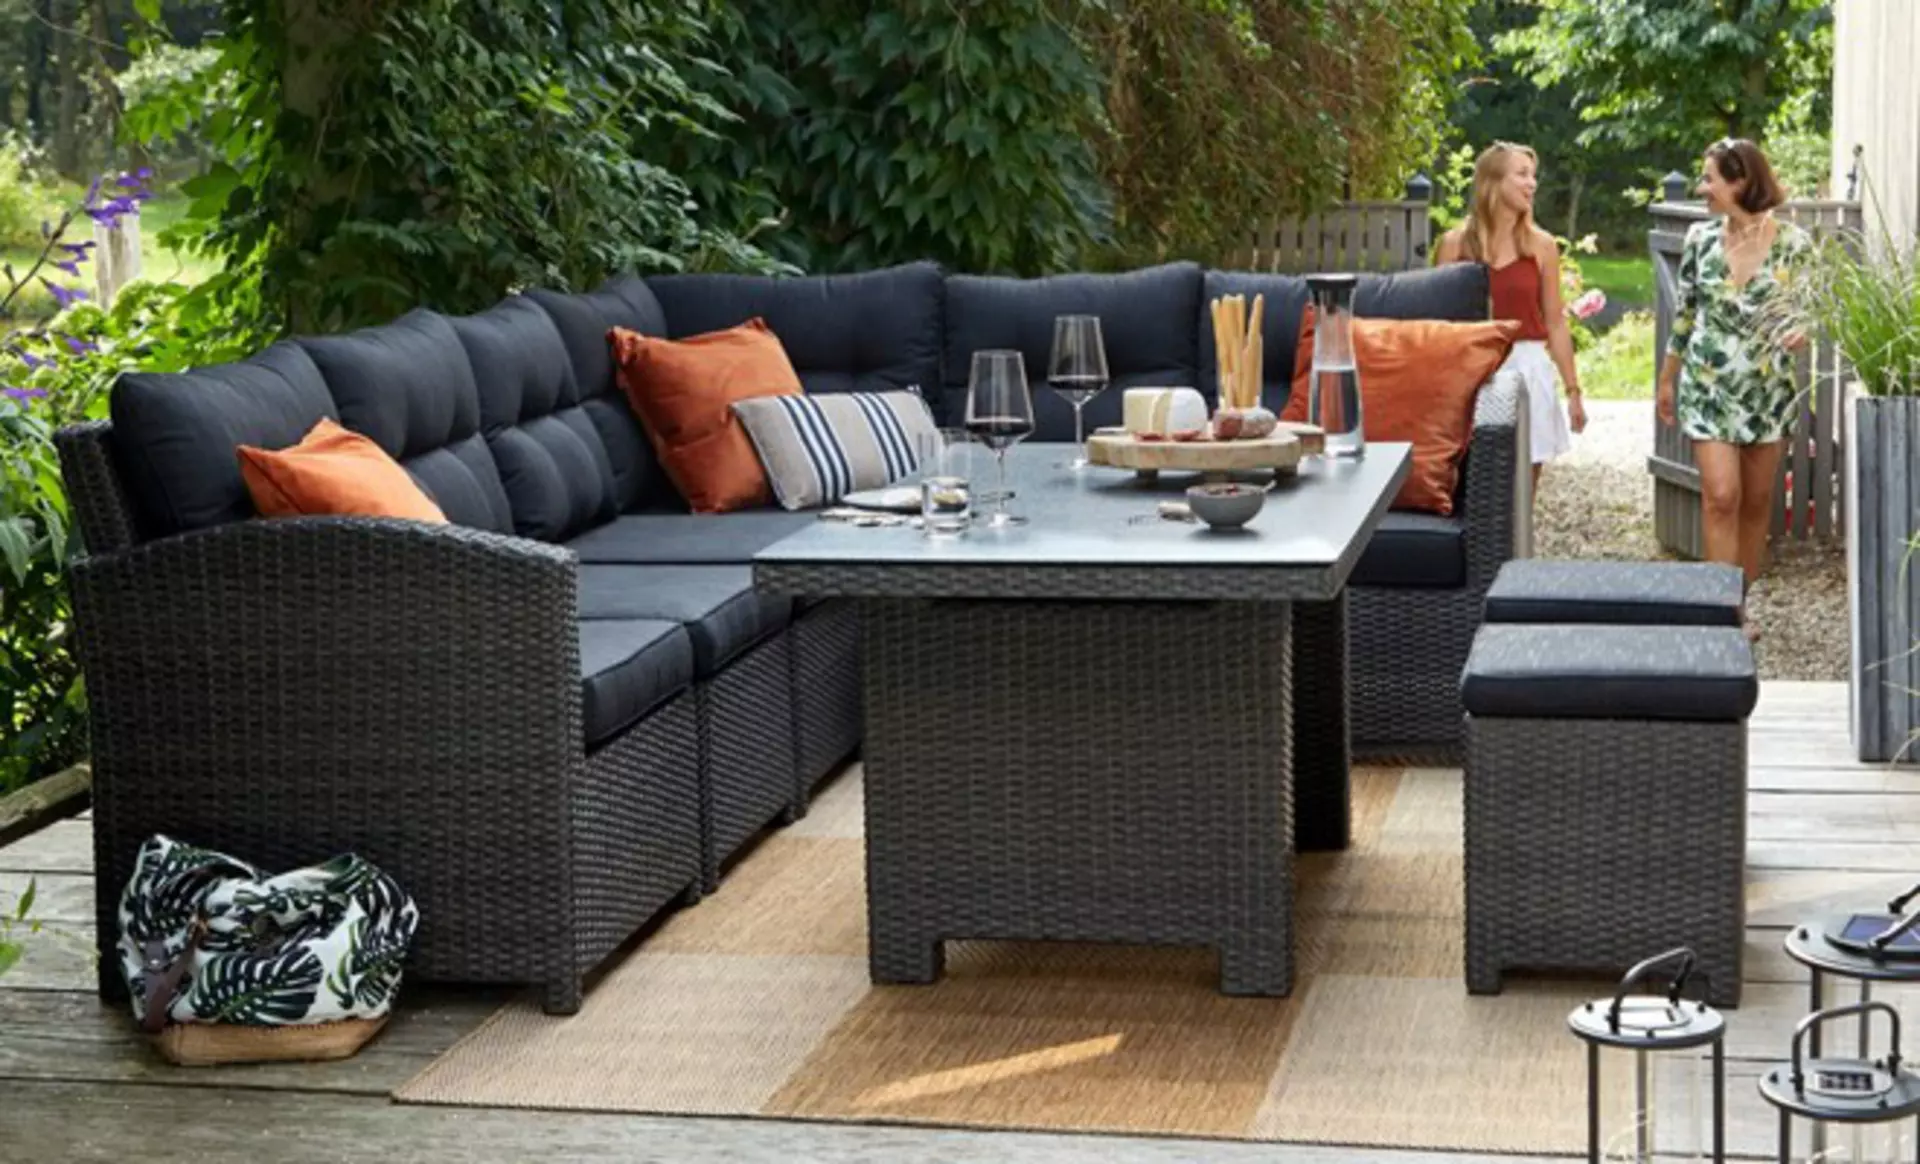 Große Lounge-Sets von Möbel Inhofer eignen sich bestens auch für Essen mit Freunden. Gartenmöbelsets für gesellige Runden gibts bei  Möbel Inhofer